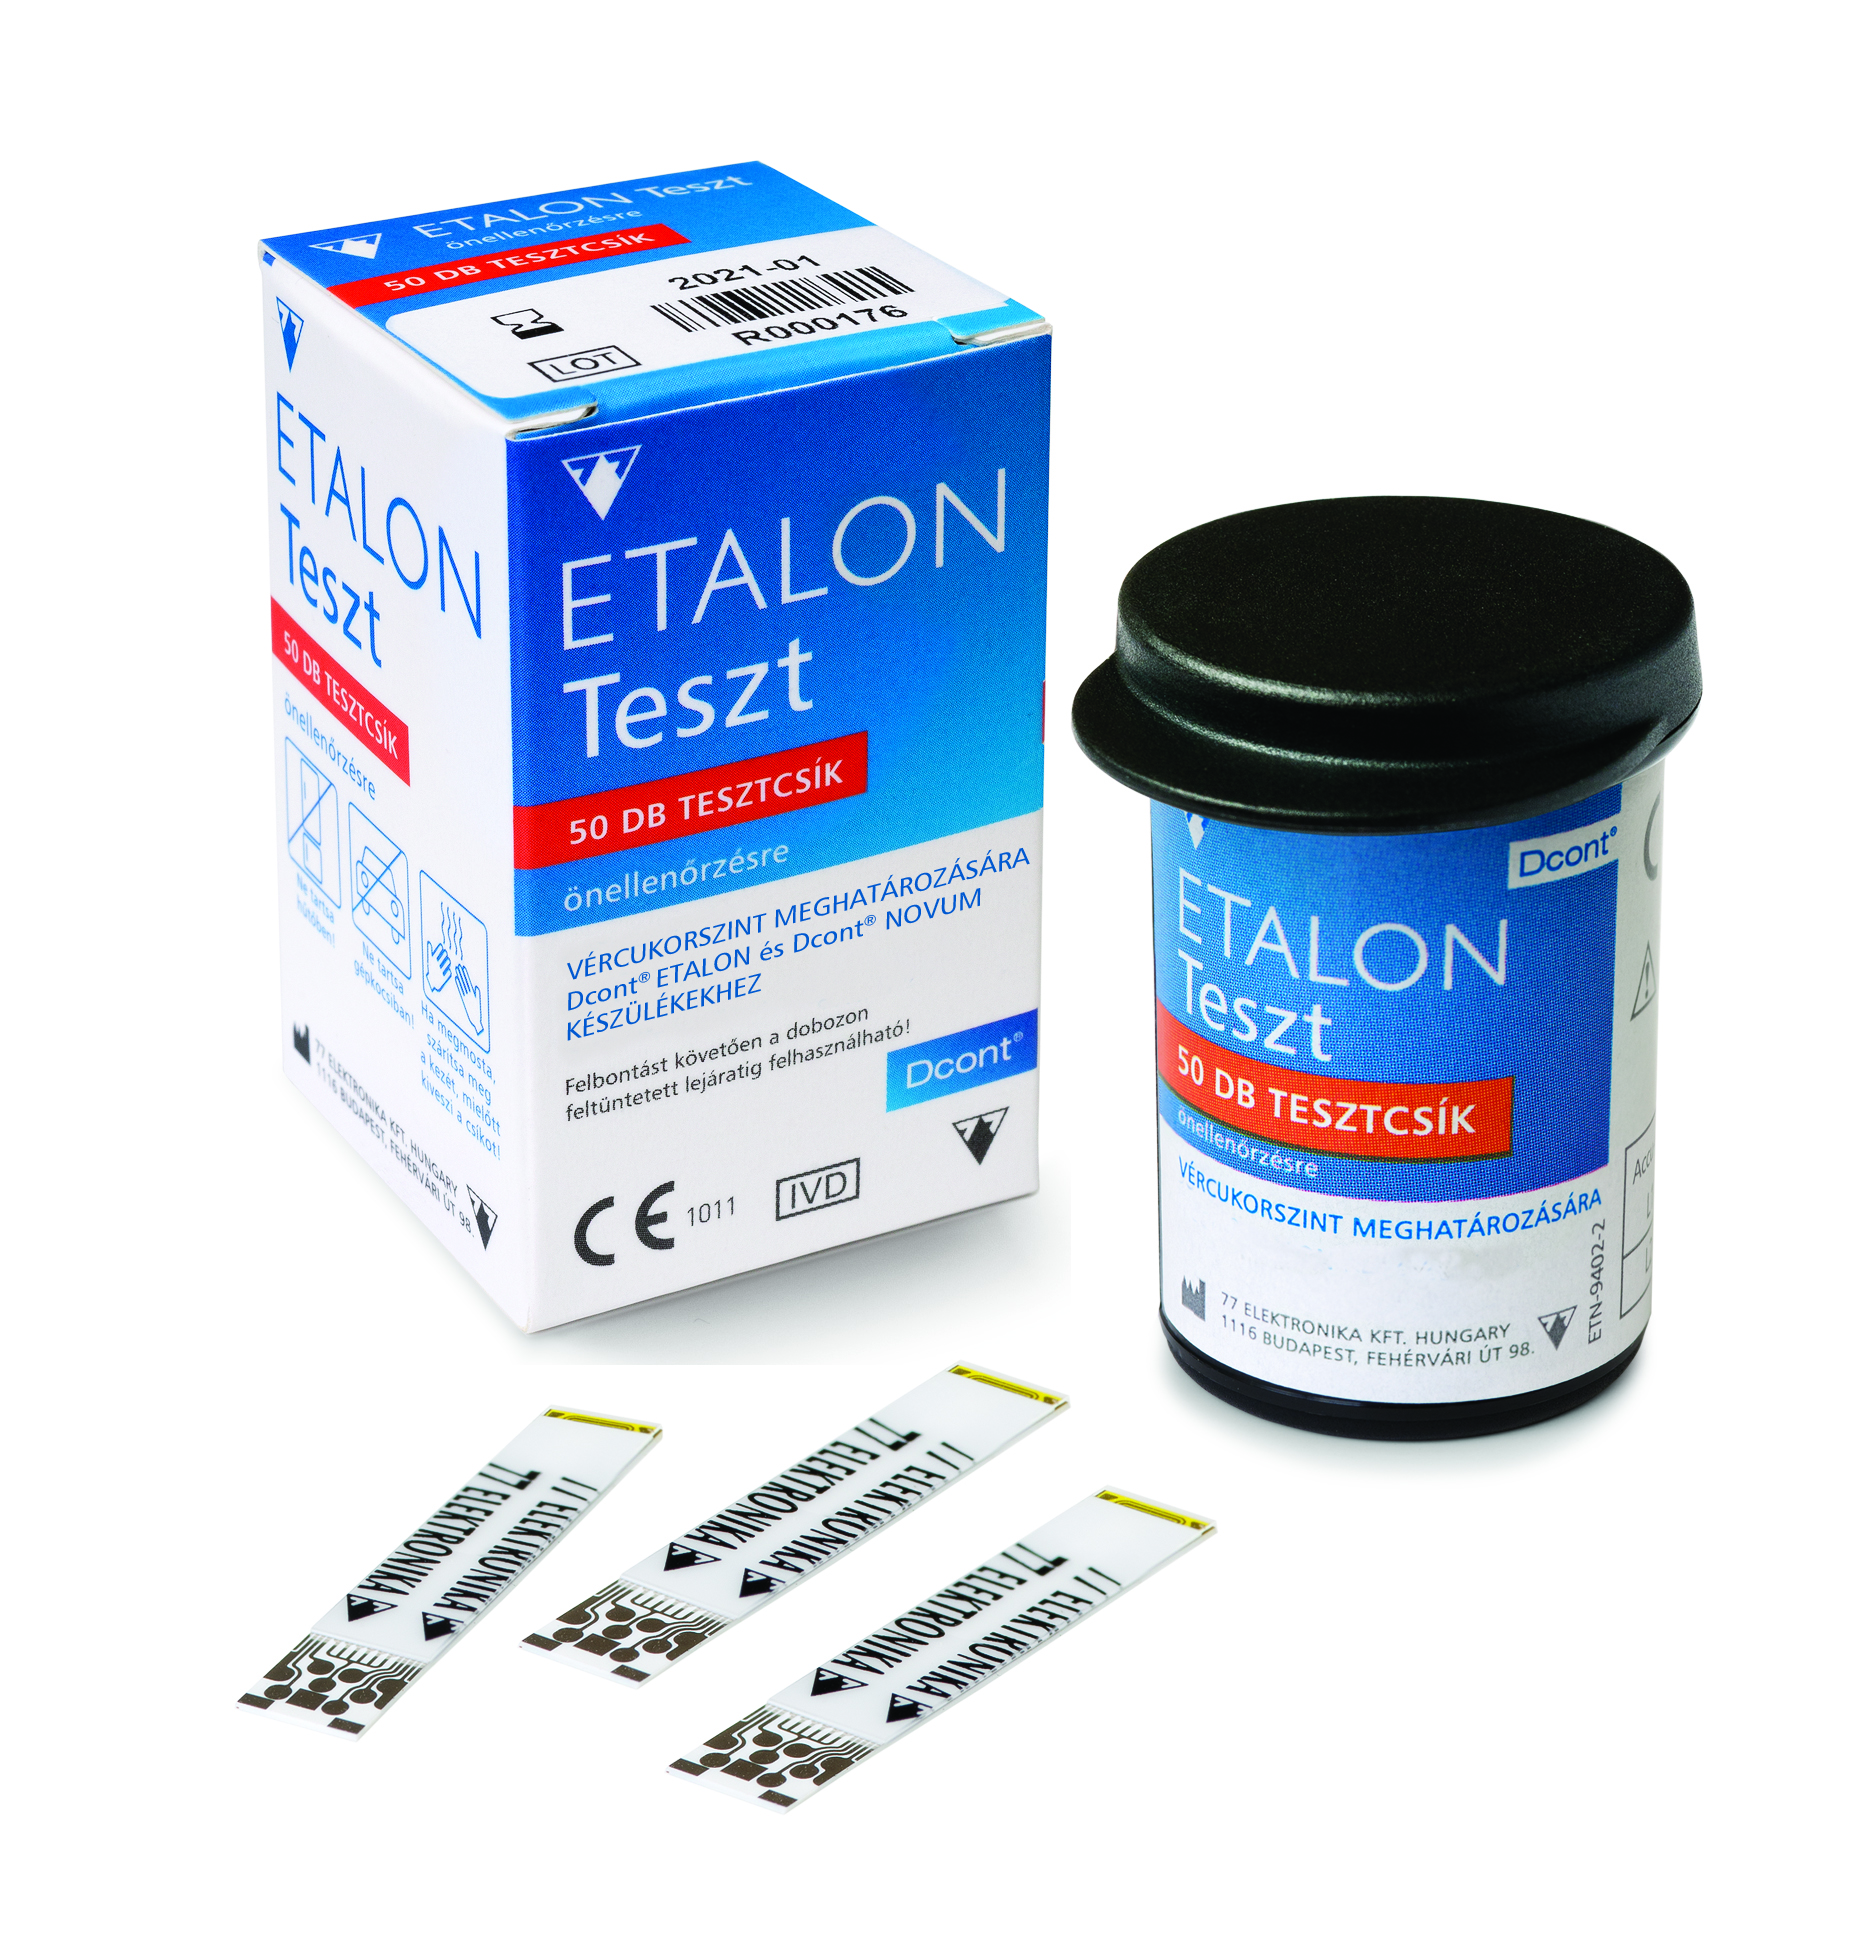 ETALON Teszt a DCONT® ETALON és a DCONT® NOVUM vércukormérő készülékekkel kompatibilis